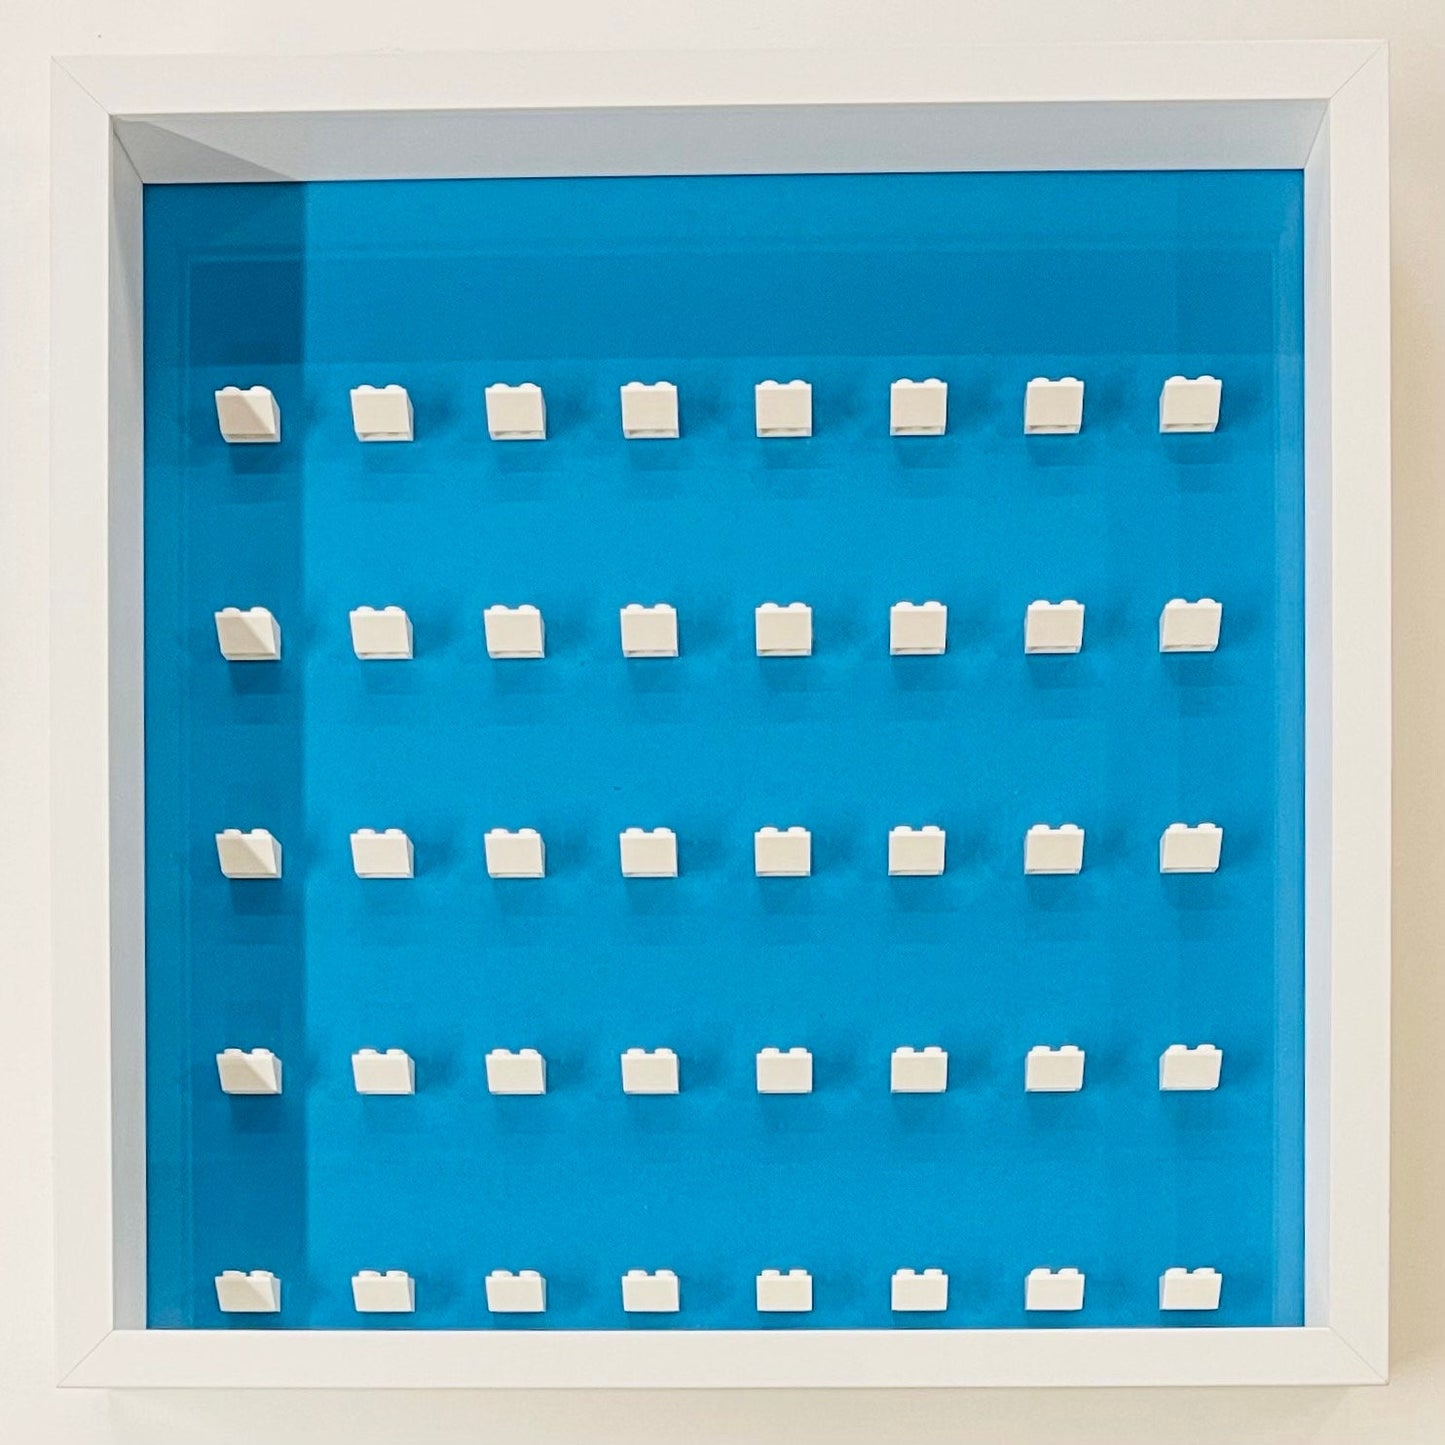 Display Frame Case For General Lego Minifigures  No Figures 37cm Blue